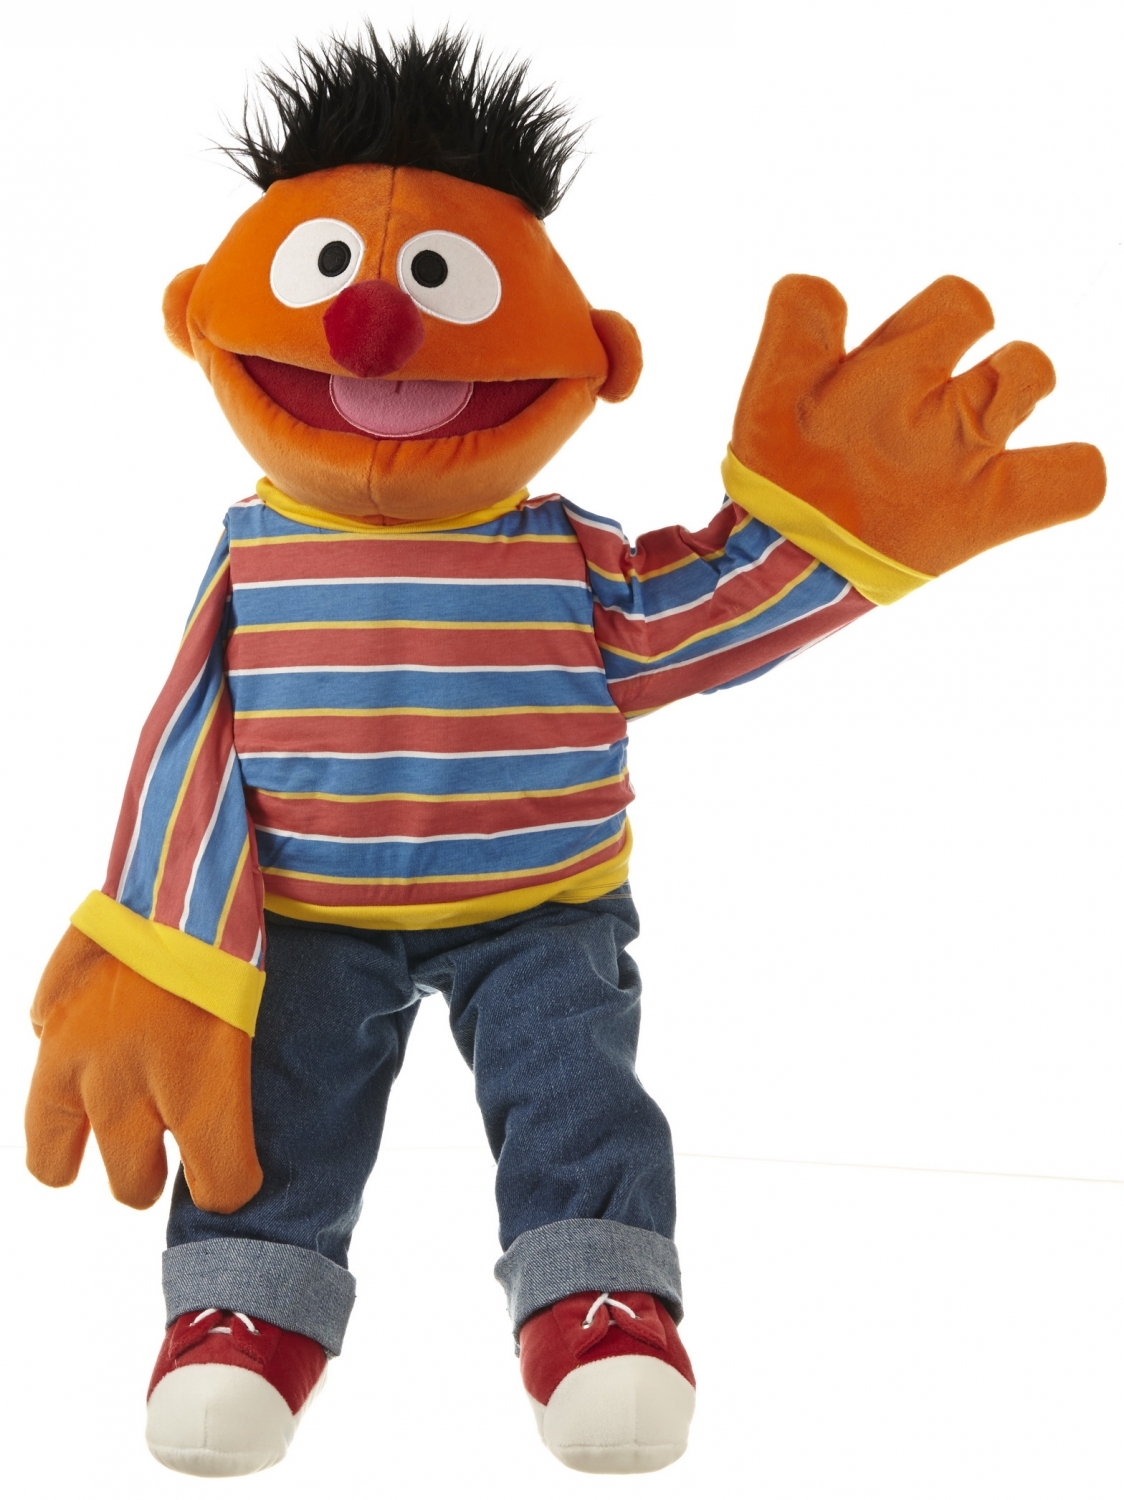 Beschuldigingen betrouwbaarheid Editor Ernie Sesamstraat, handpop Ernie, personage Sesamstraat, 65cm handpop